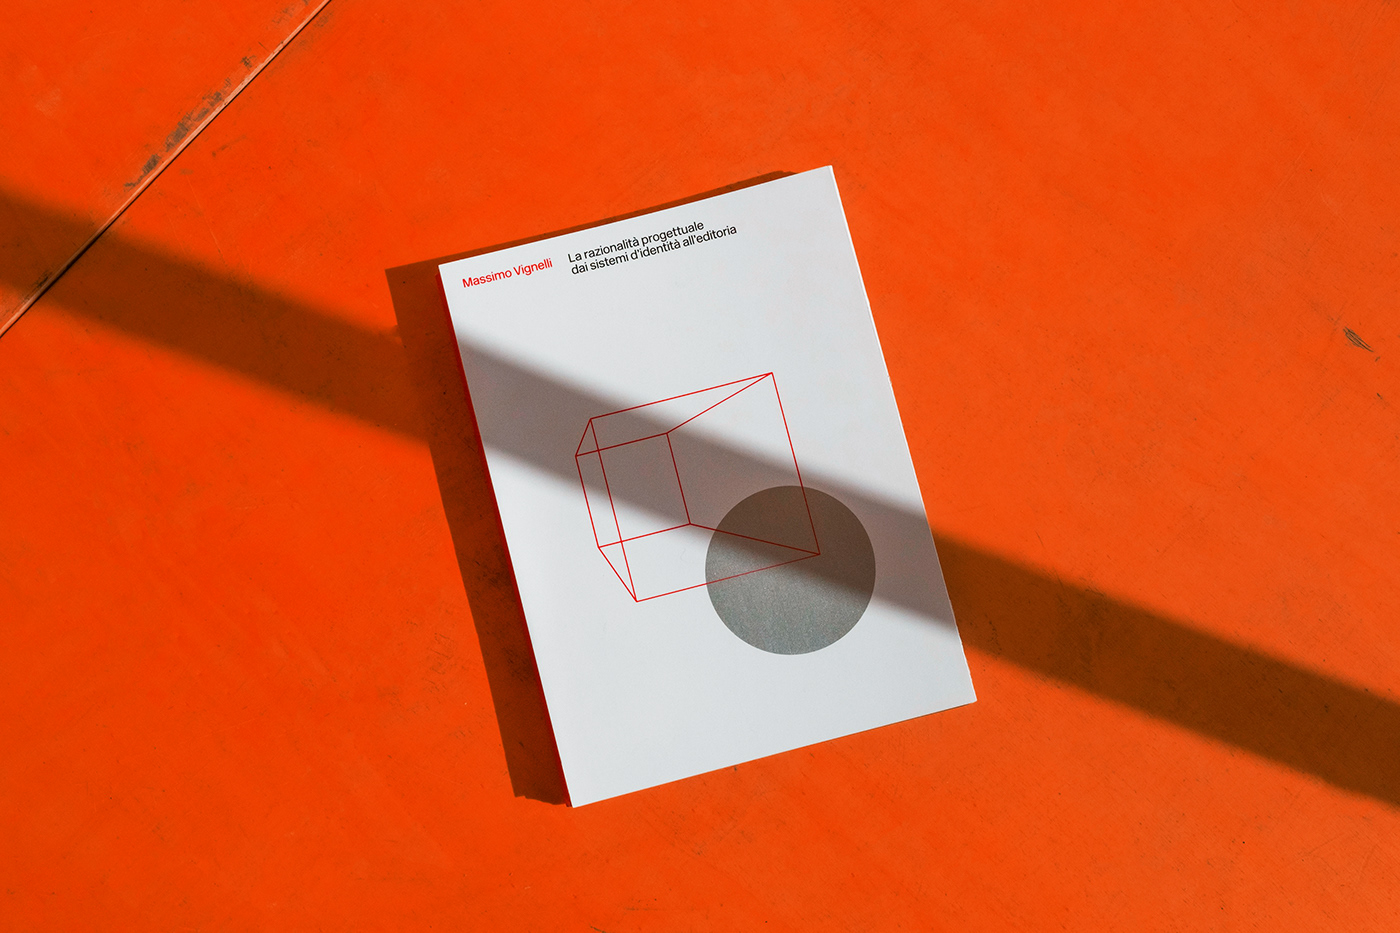 massimo vignelli book design graphic grid editorial poster graphic design  ISIA Urbino swiss